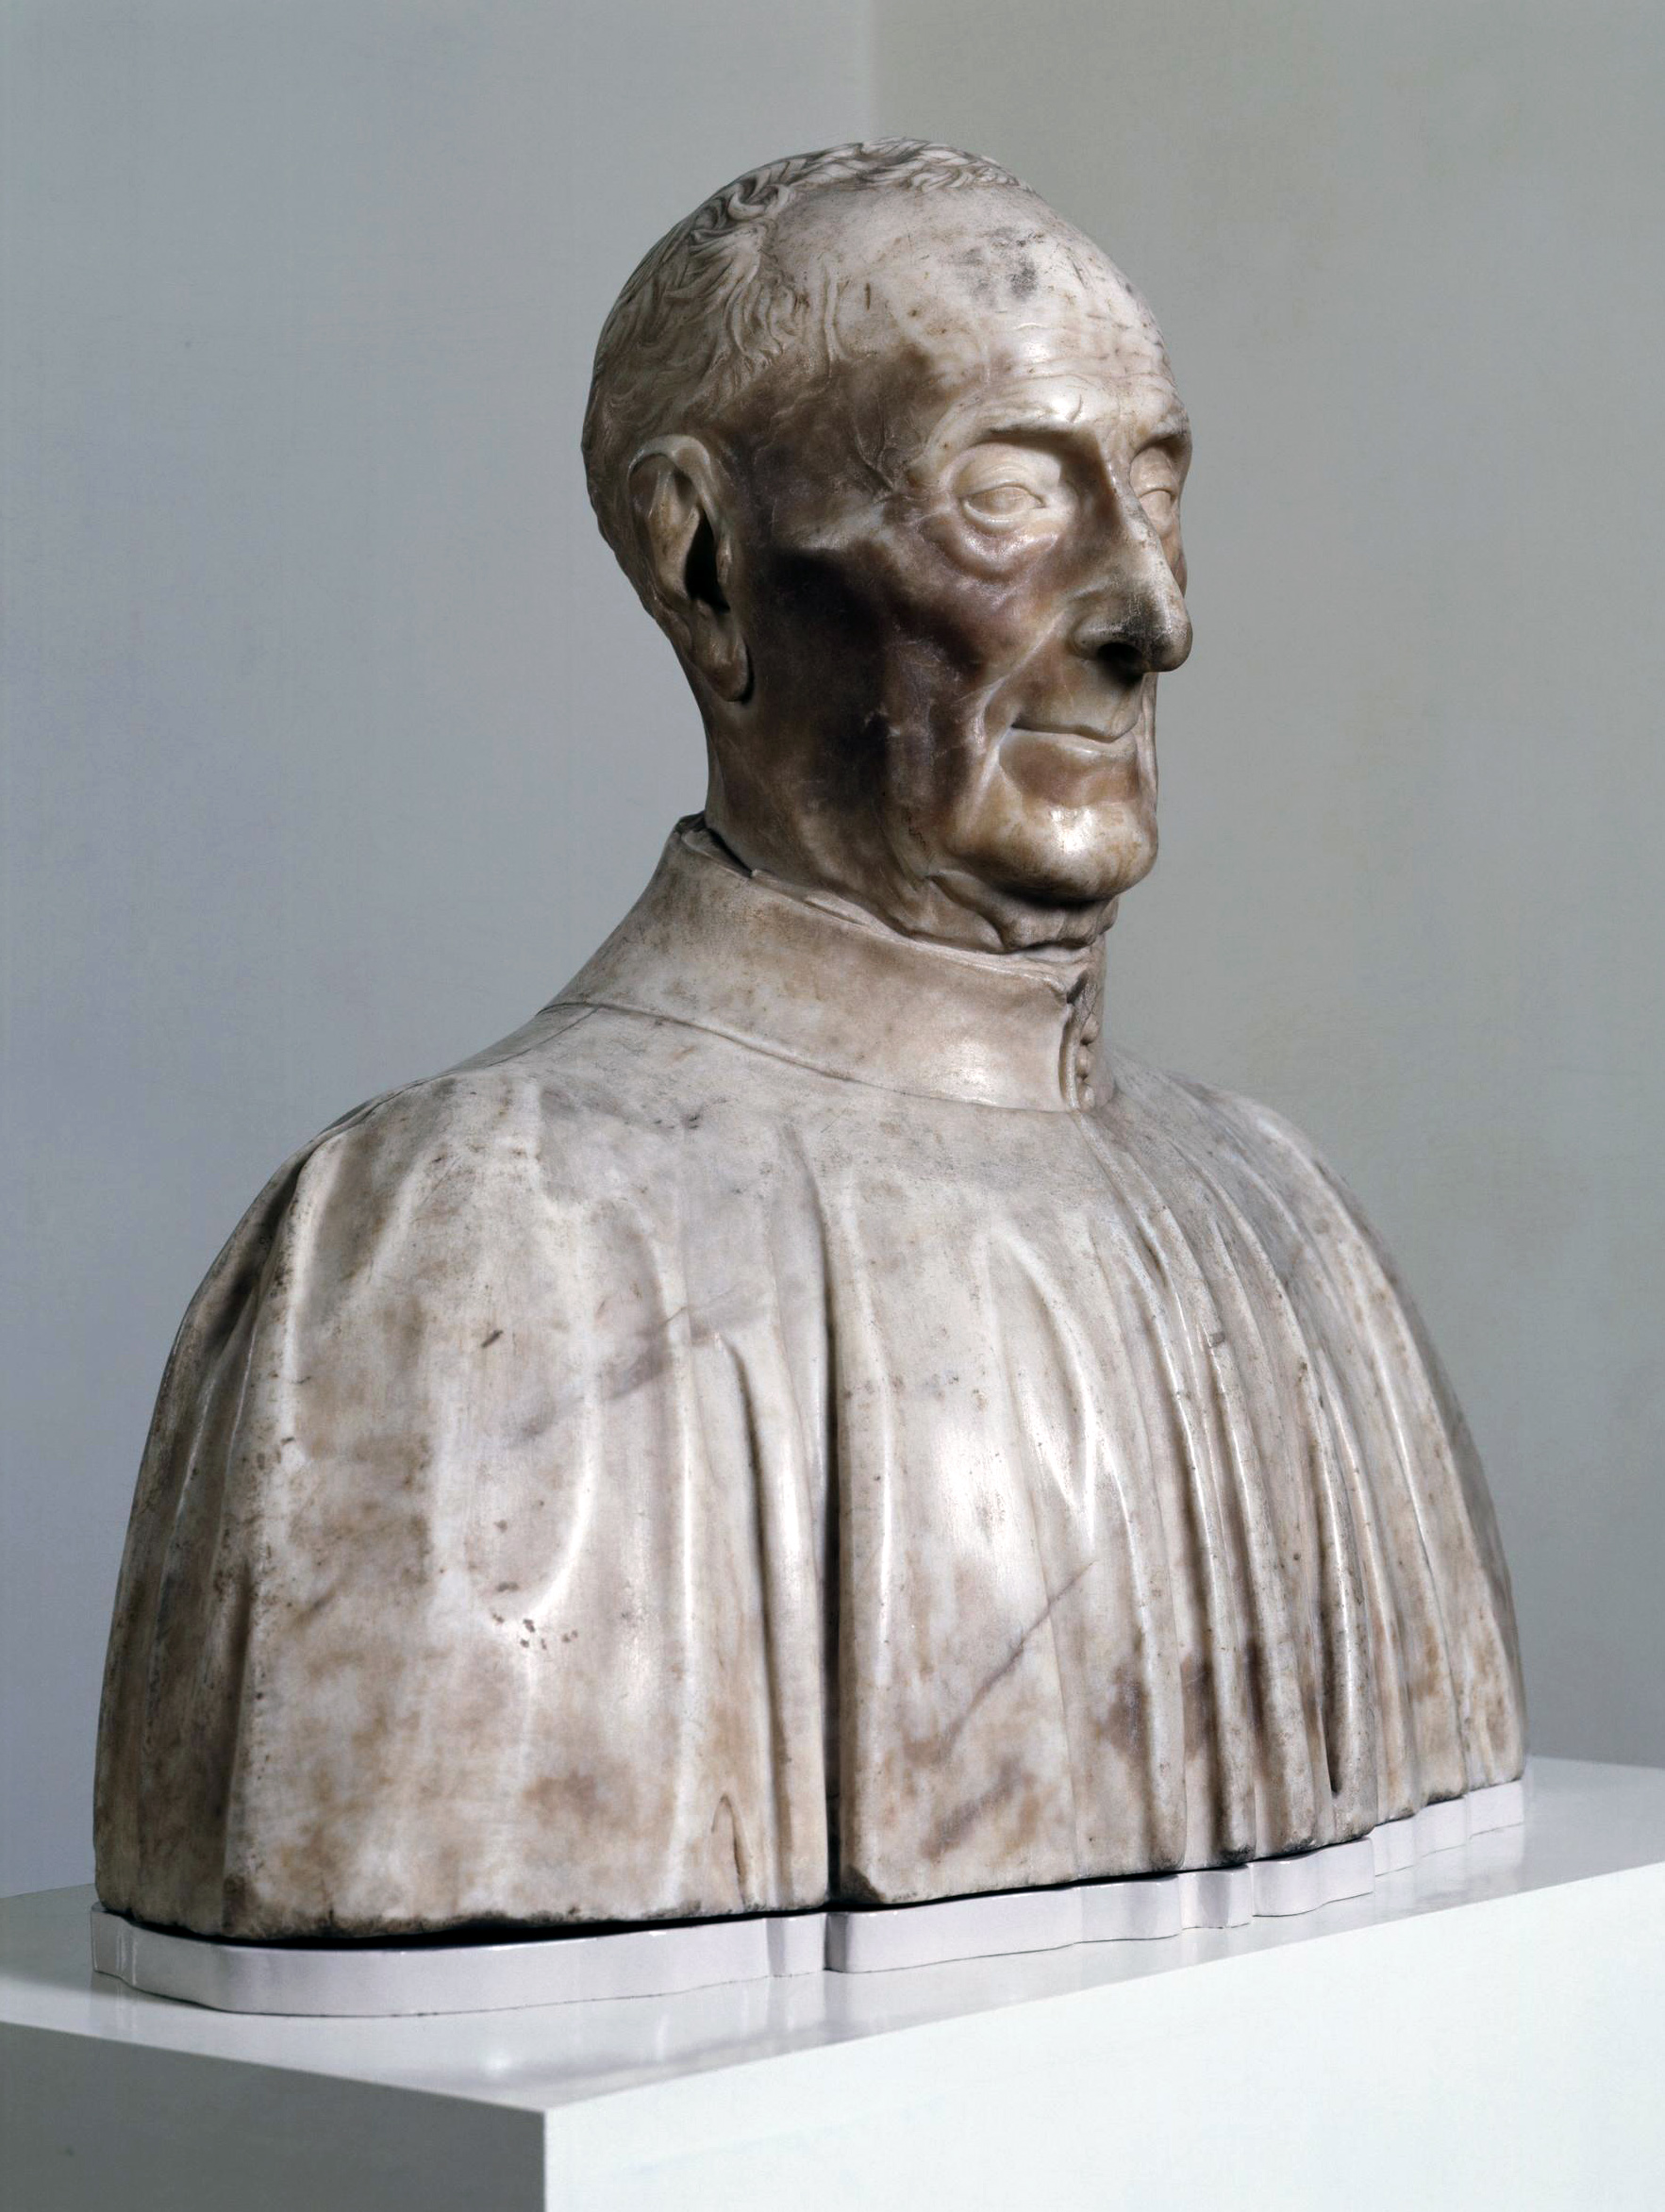 Antonio Rosselino, Portrait of Giovanni di Antonio Chellini da San Miniato, 1456, marble, H: 51.1 cm, W: 57.6 cm, D: 29.6 cm (Victoria and Albert Museum, London)